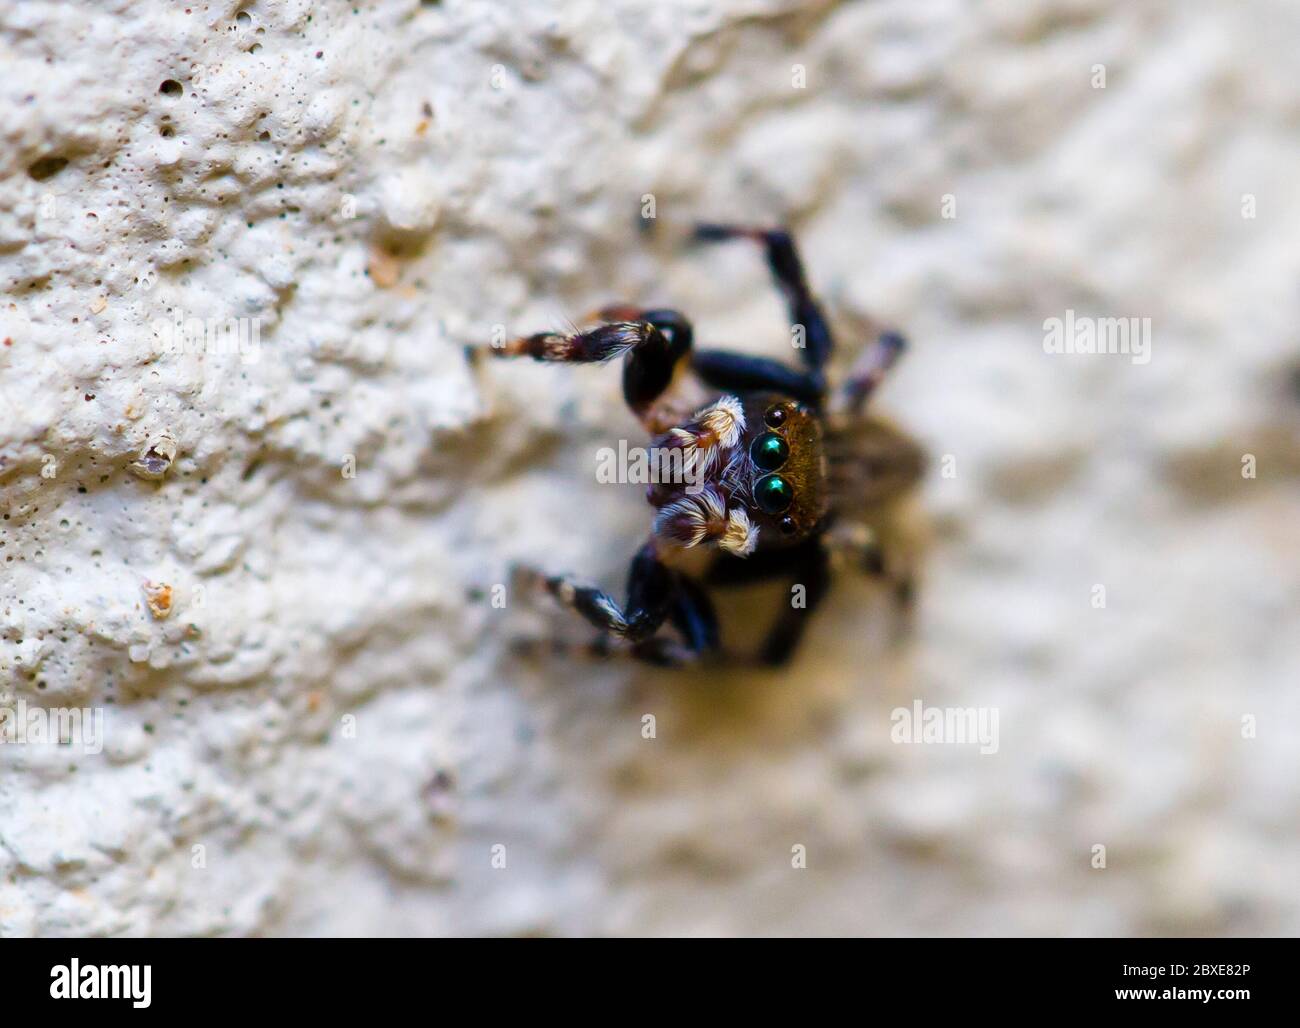 Eine niedliche Spinne mit großen Augen, die dich ansieht Stockfotografie -  Alamy